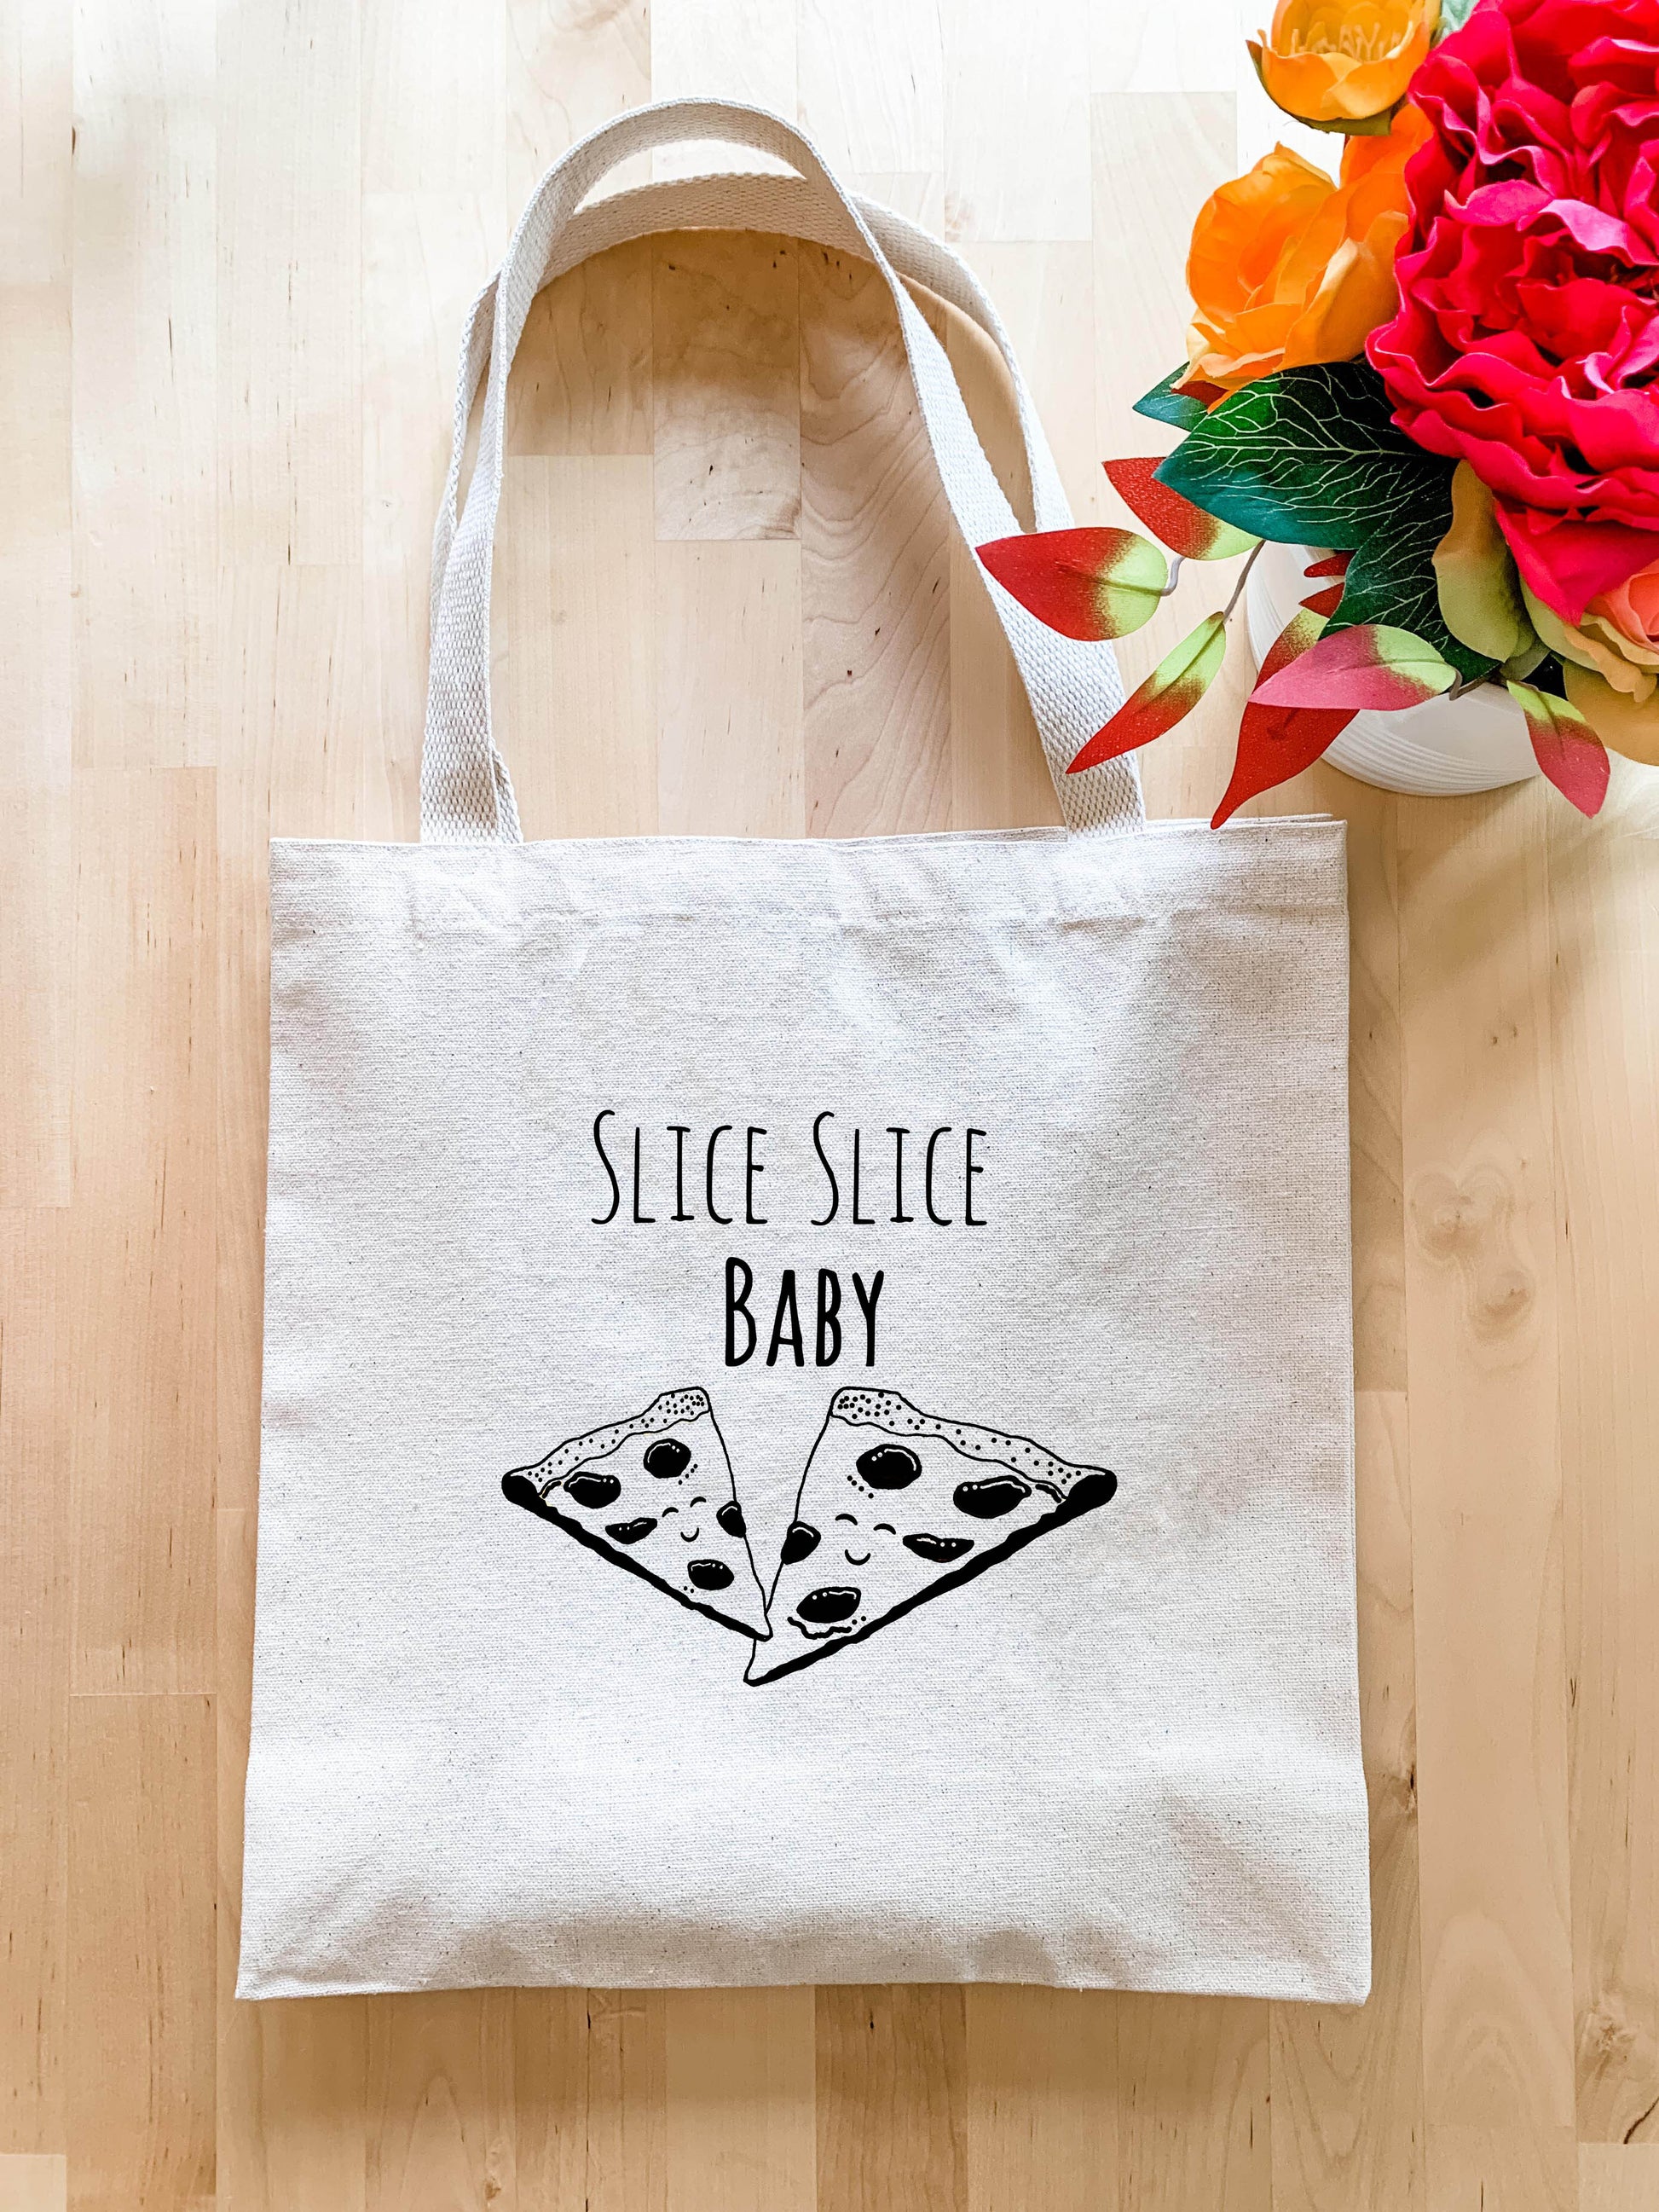 Slice Slice Baby - Tote Bag - MoonlightMakers